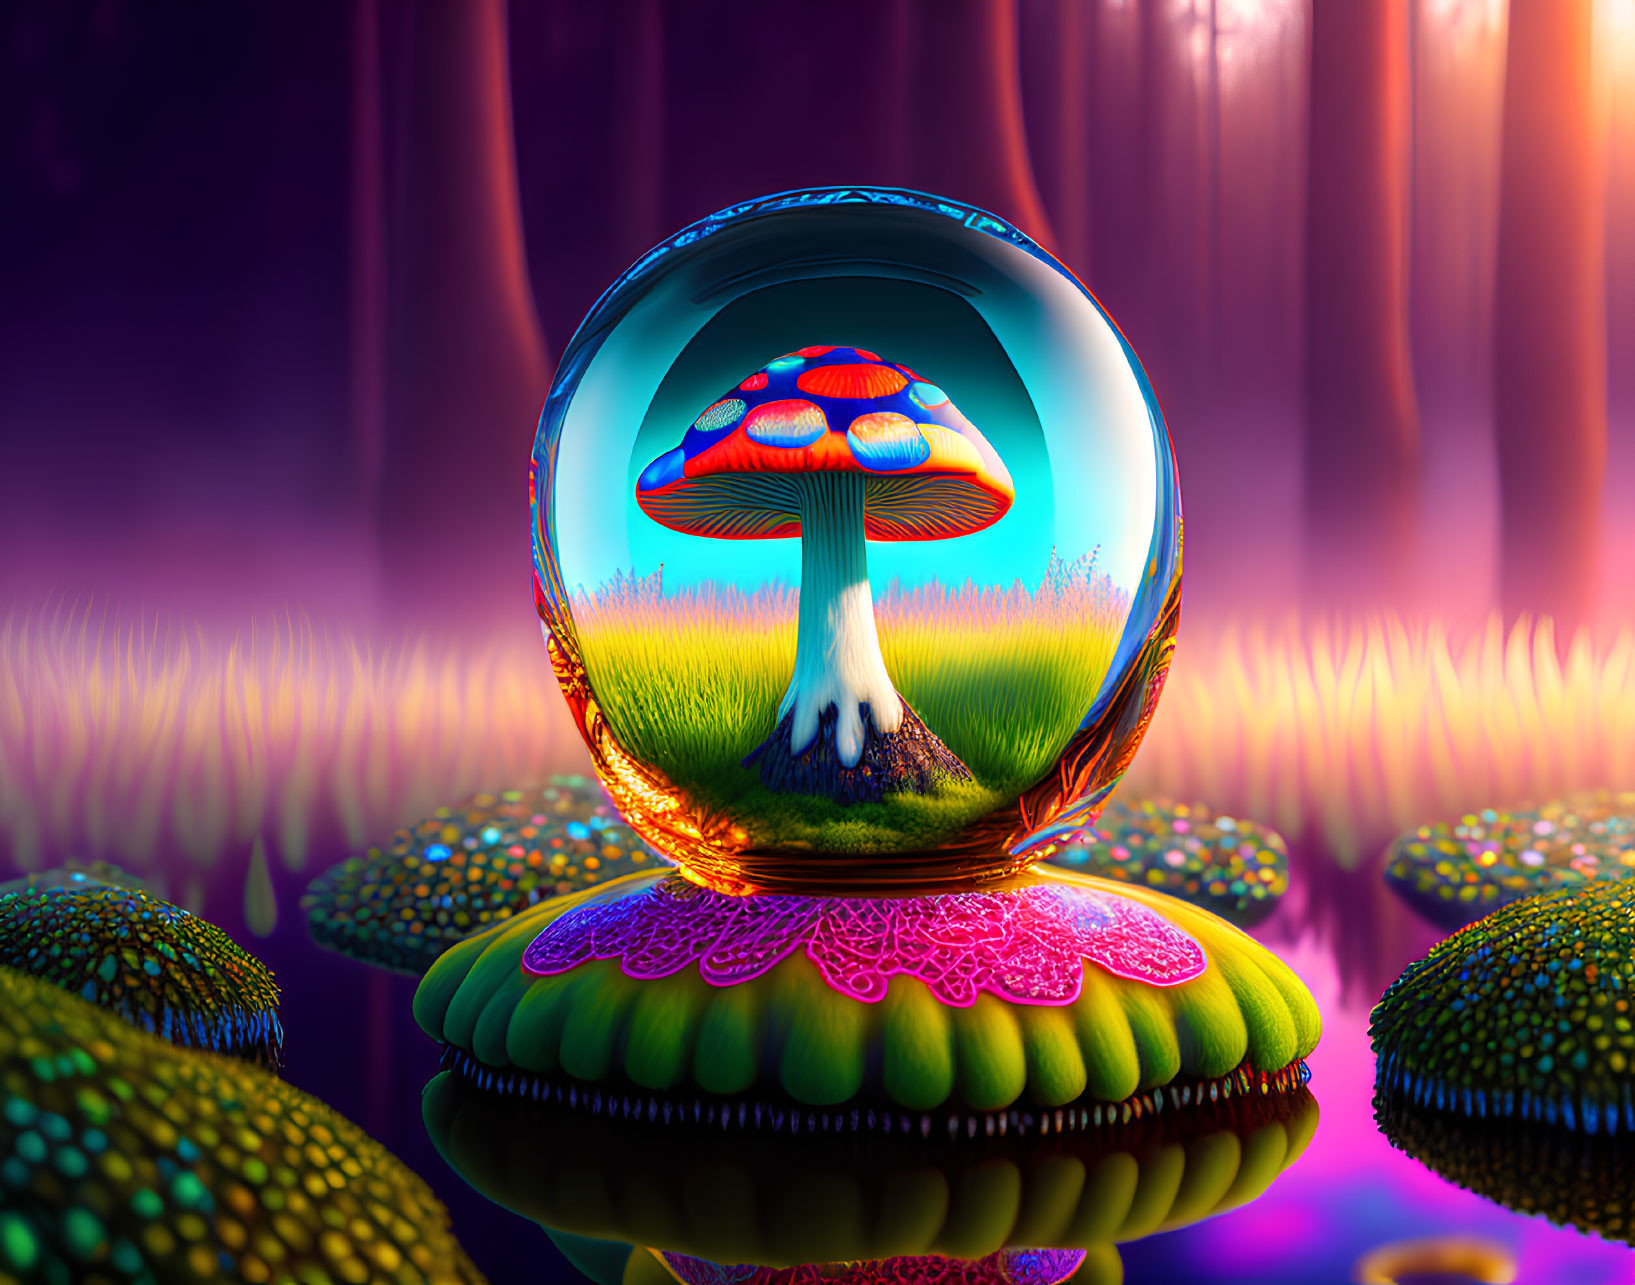 Colorful Mushroom in Translucent Sphere on Patterned Pedestal in Fantasy Landscape